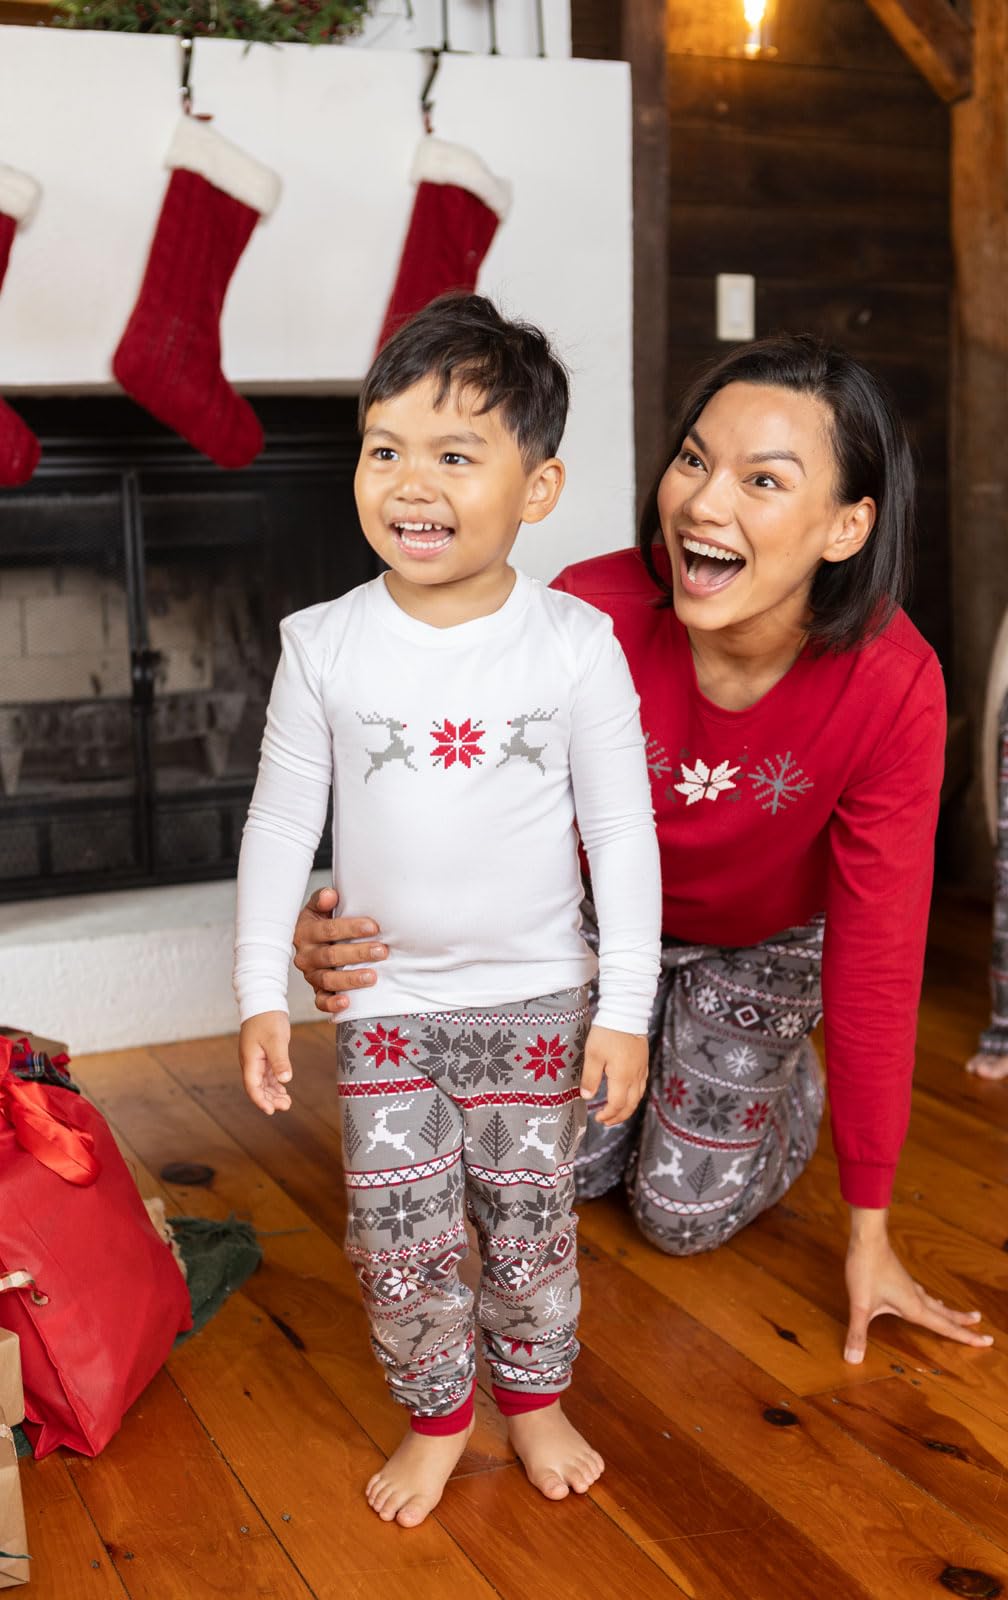 PajamaGram Christmas Pajamas For Family - Family Pajamas, Nordic Print